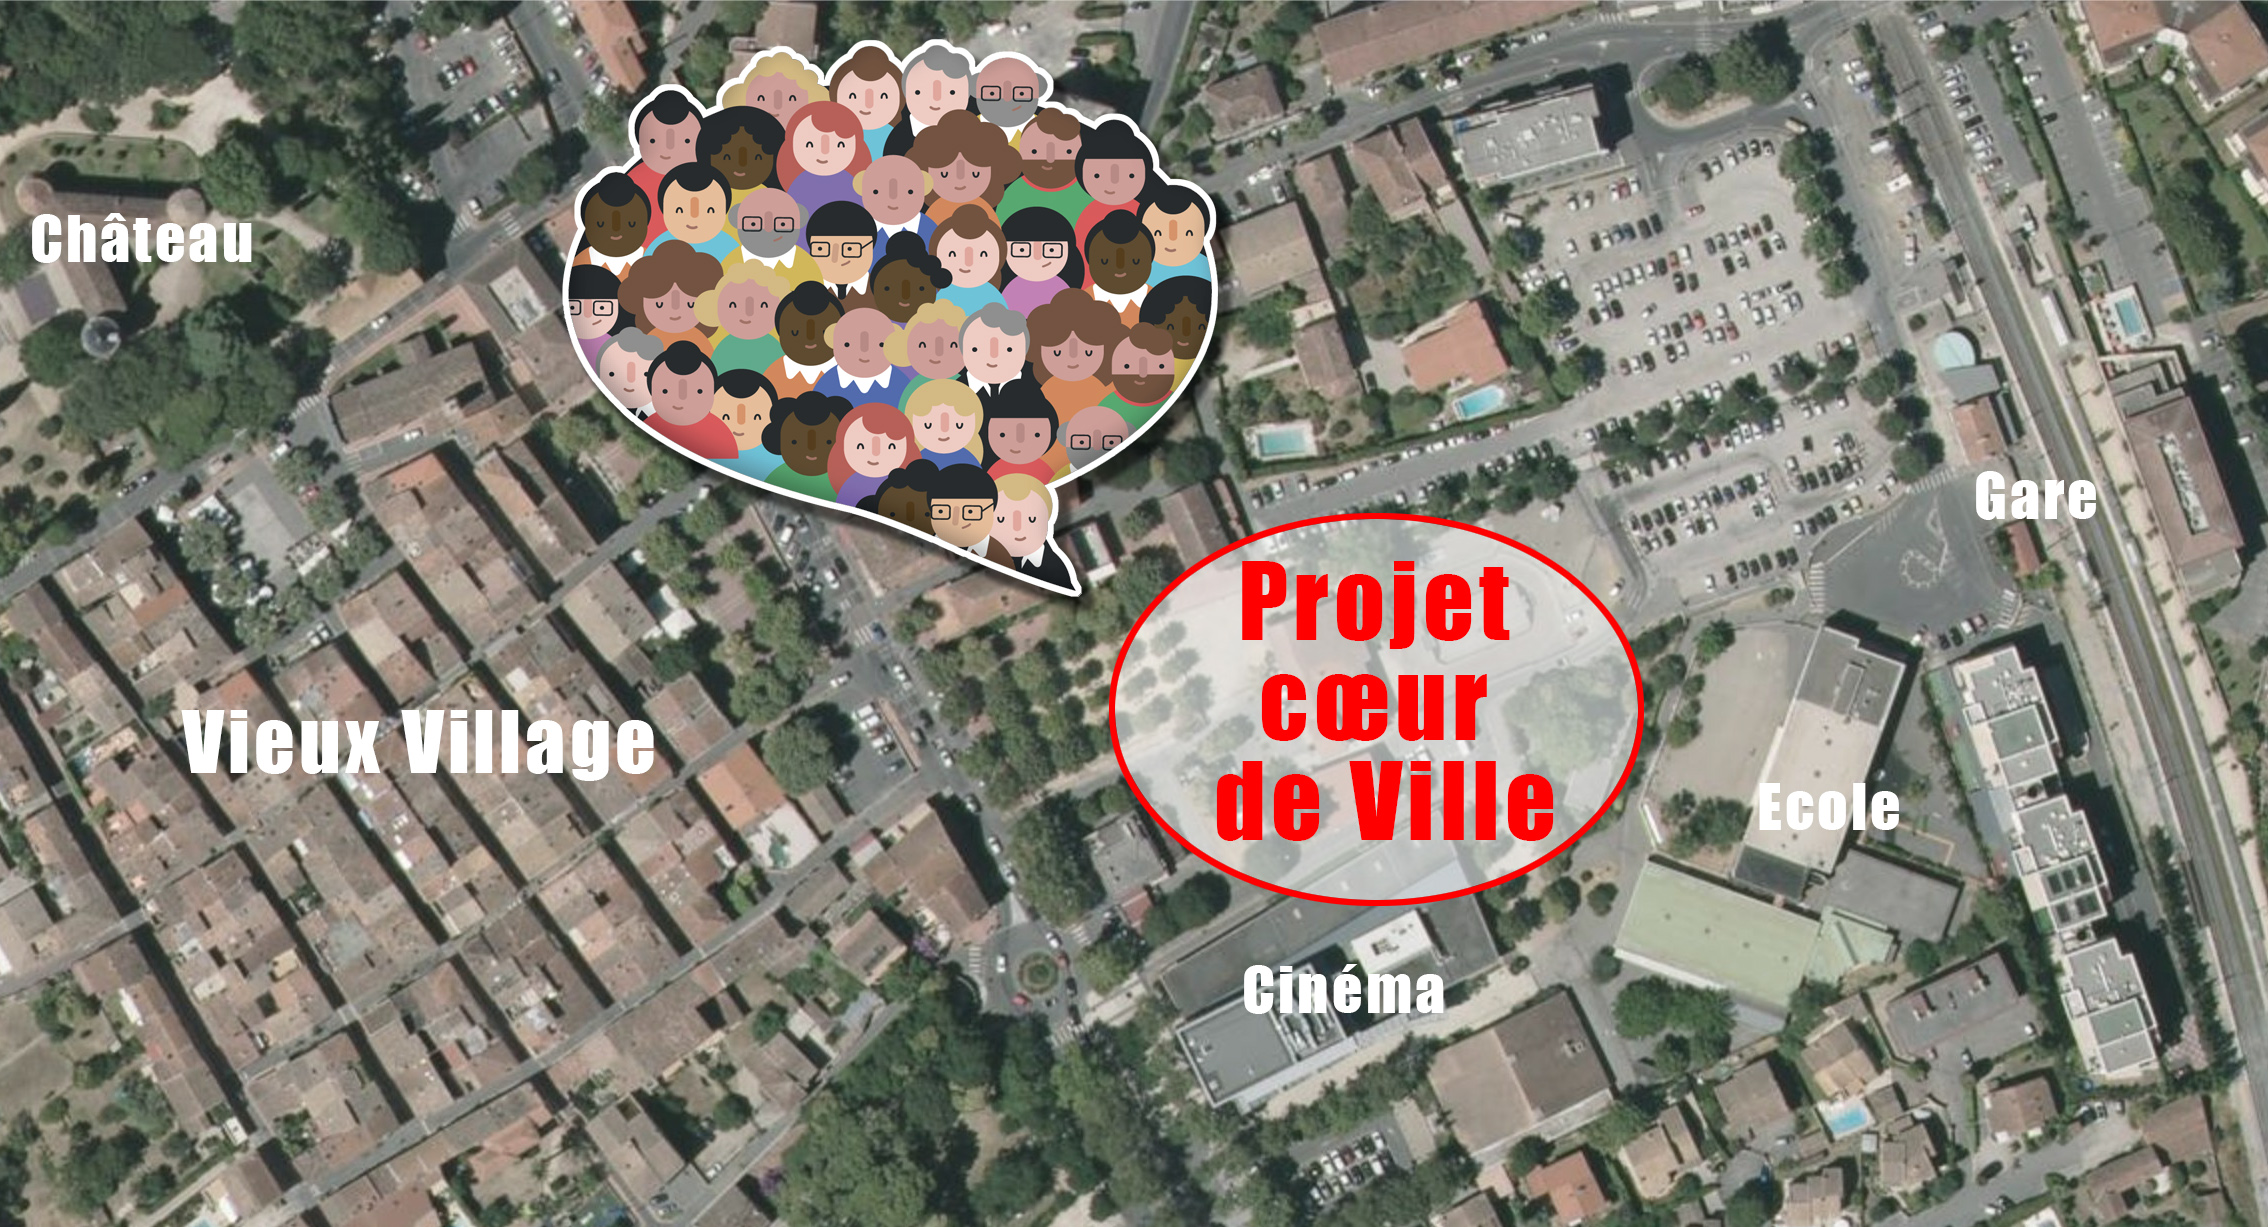 Projet immobilier Cœur de ville à Mouans-Sartoux – Demande de mise en place d’outils de participation citoyenne